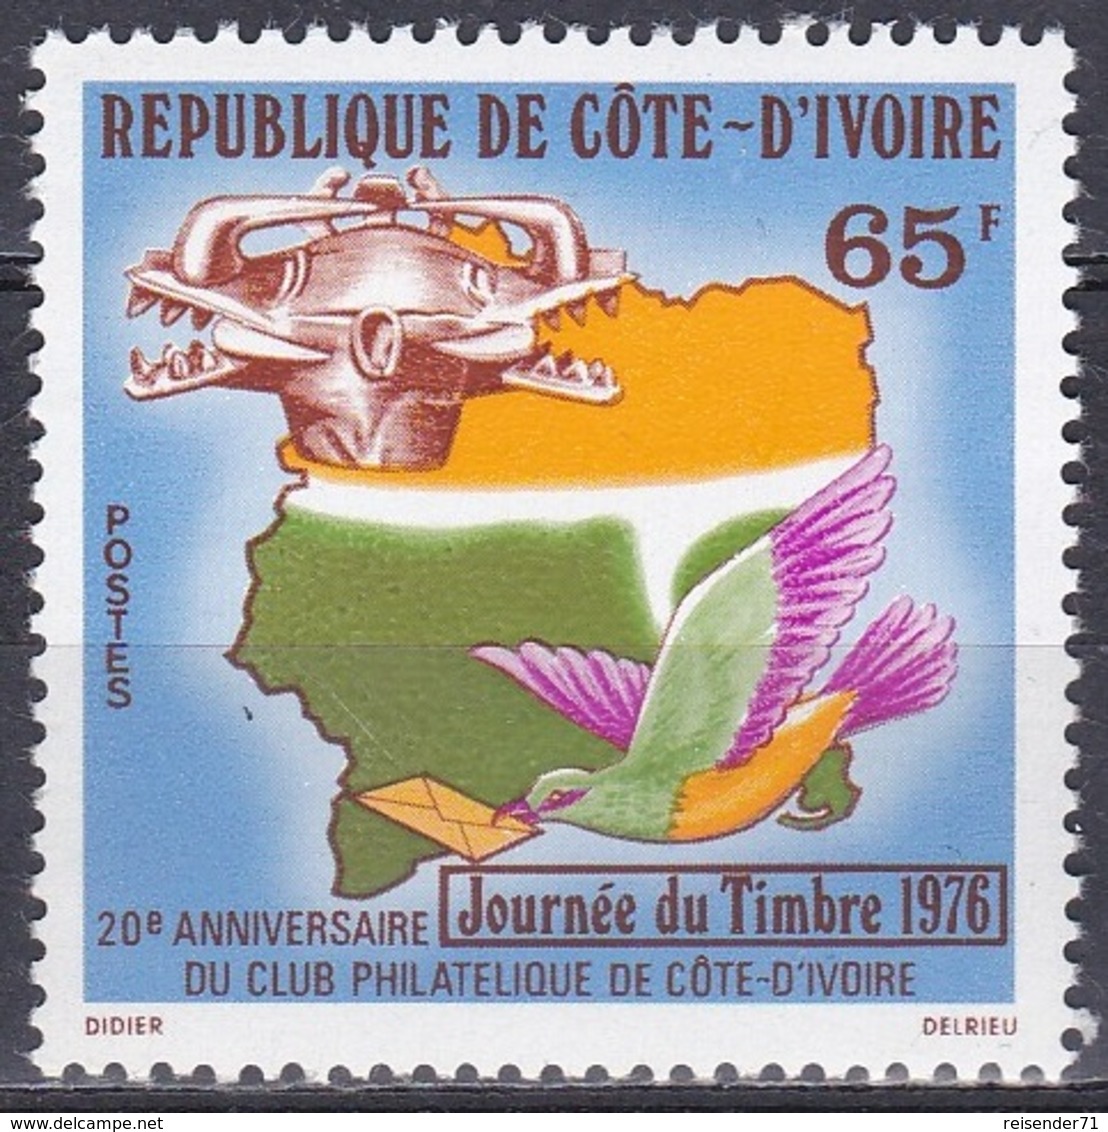 Elfenbeinküste Ivory Coast Cote D'Ivoire 1976 Philatelie Philately Brieftauben Tauben Doves Masken Masks, Mi. 488 ** - Ivory Coast (1960-...)